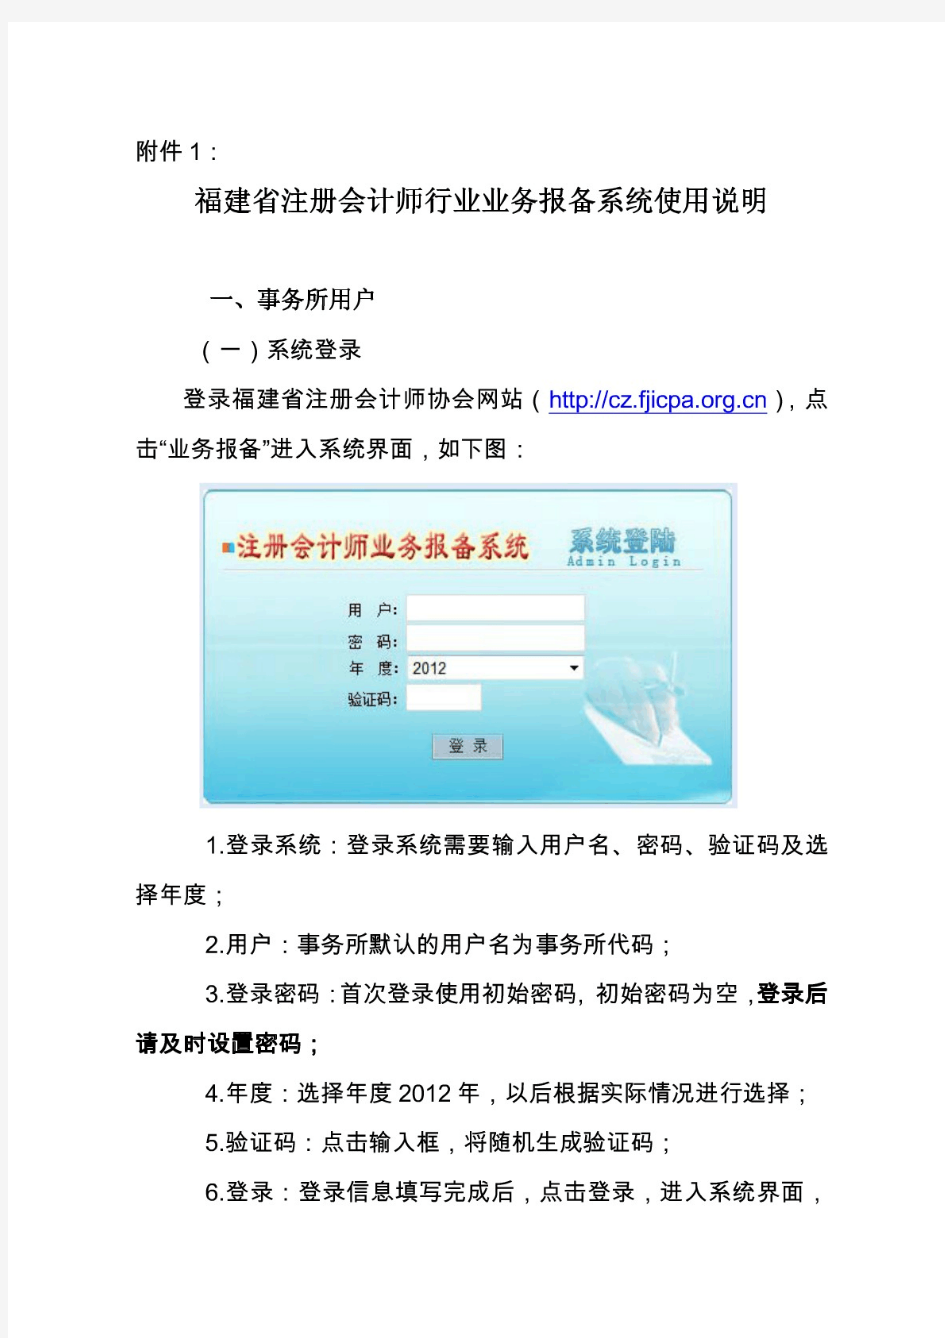 福建省注册会计师行业业务报备系统使用说明 - 福建省注册会计师协会